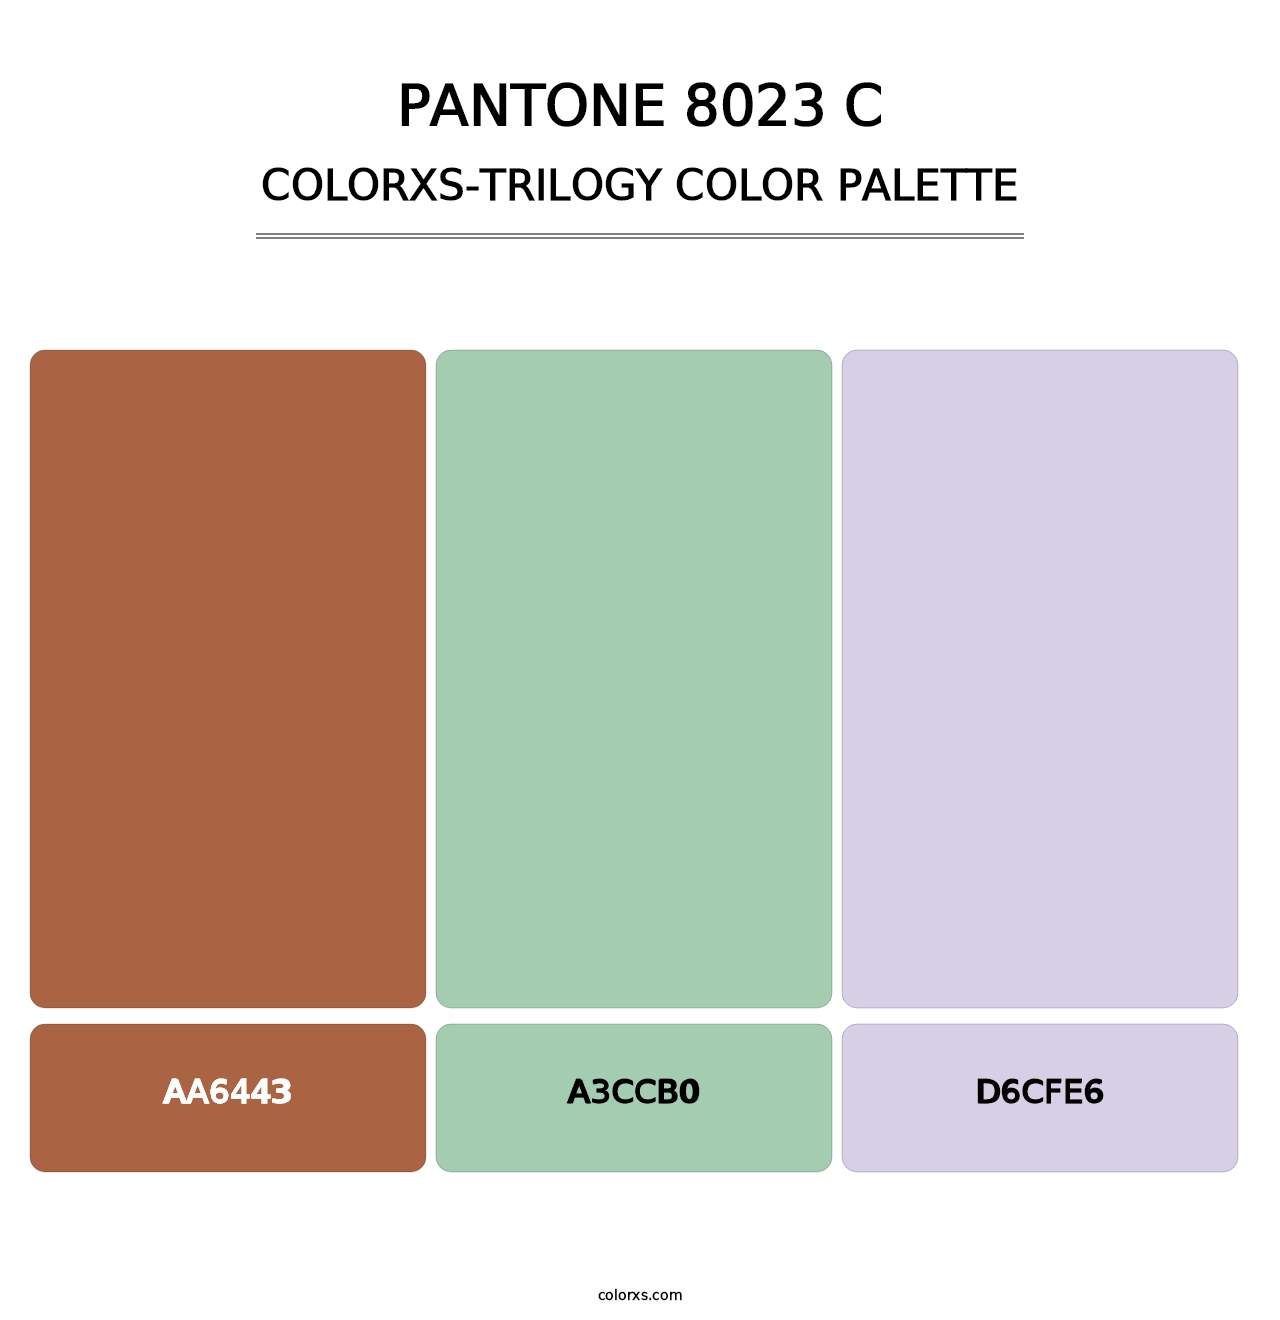 PANTONE 8023 C - Colorxs Trilogy Palette